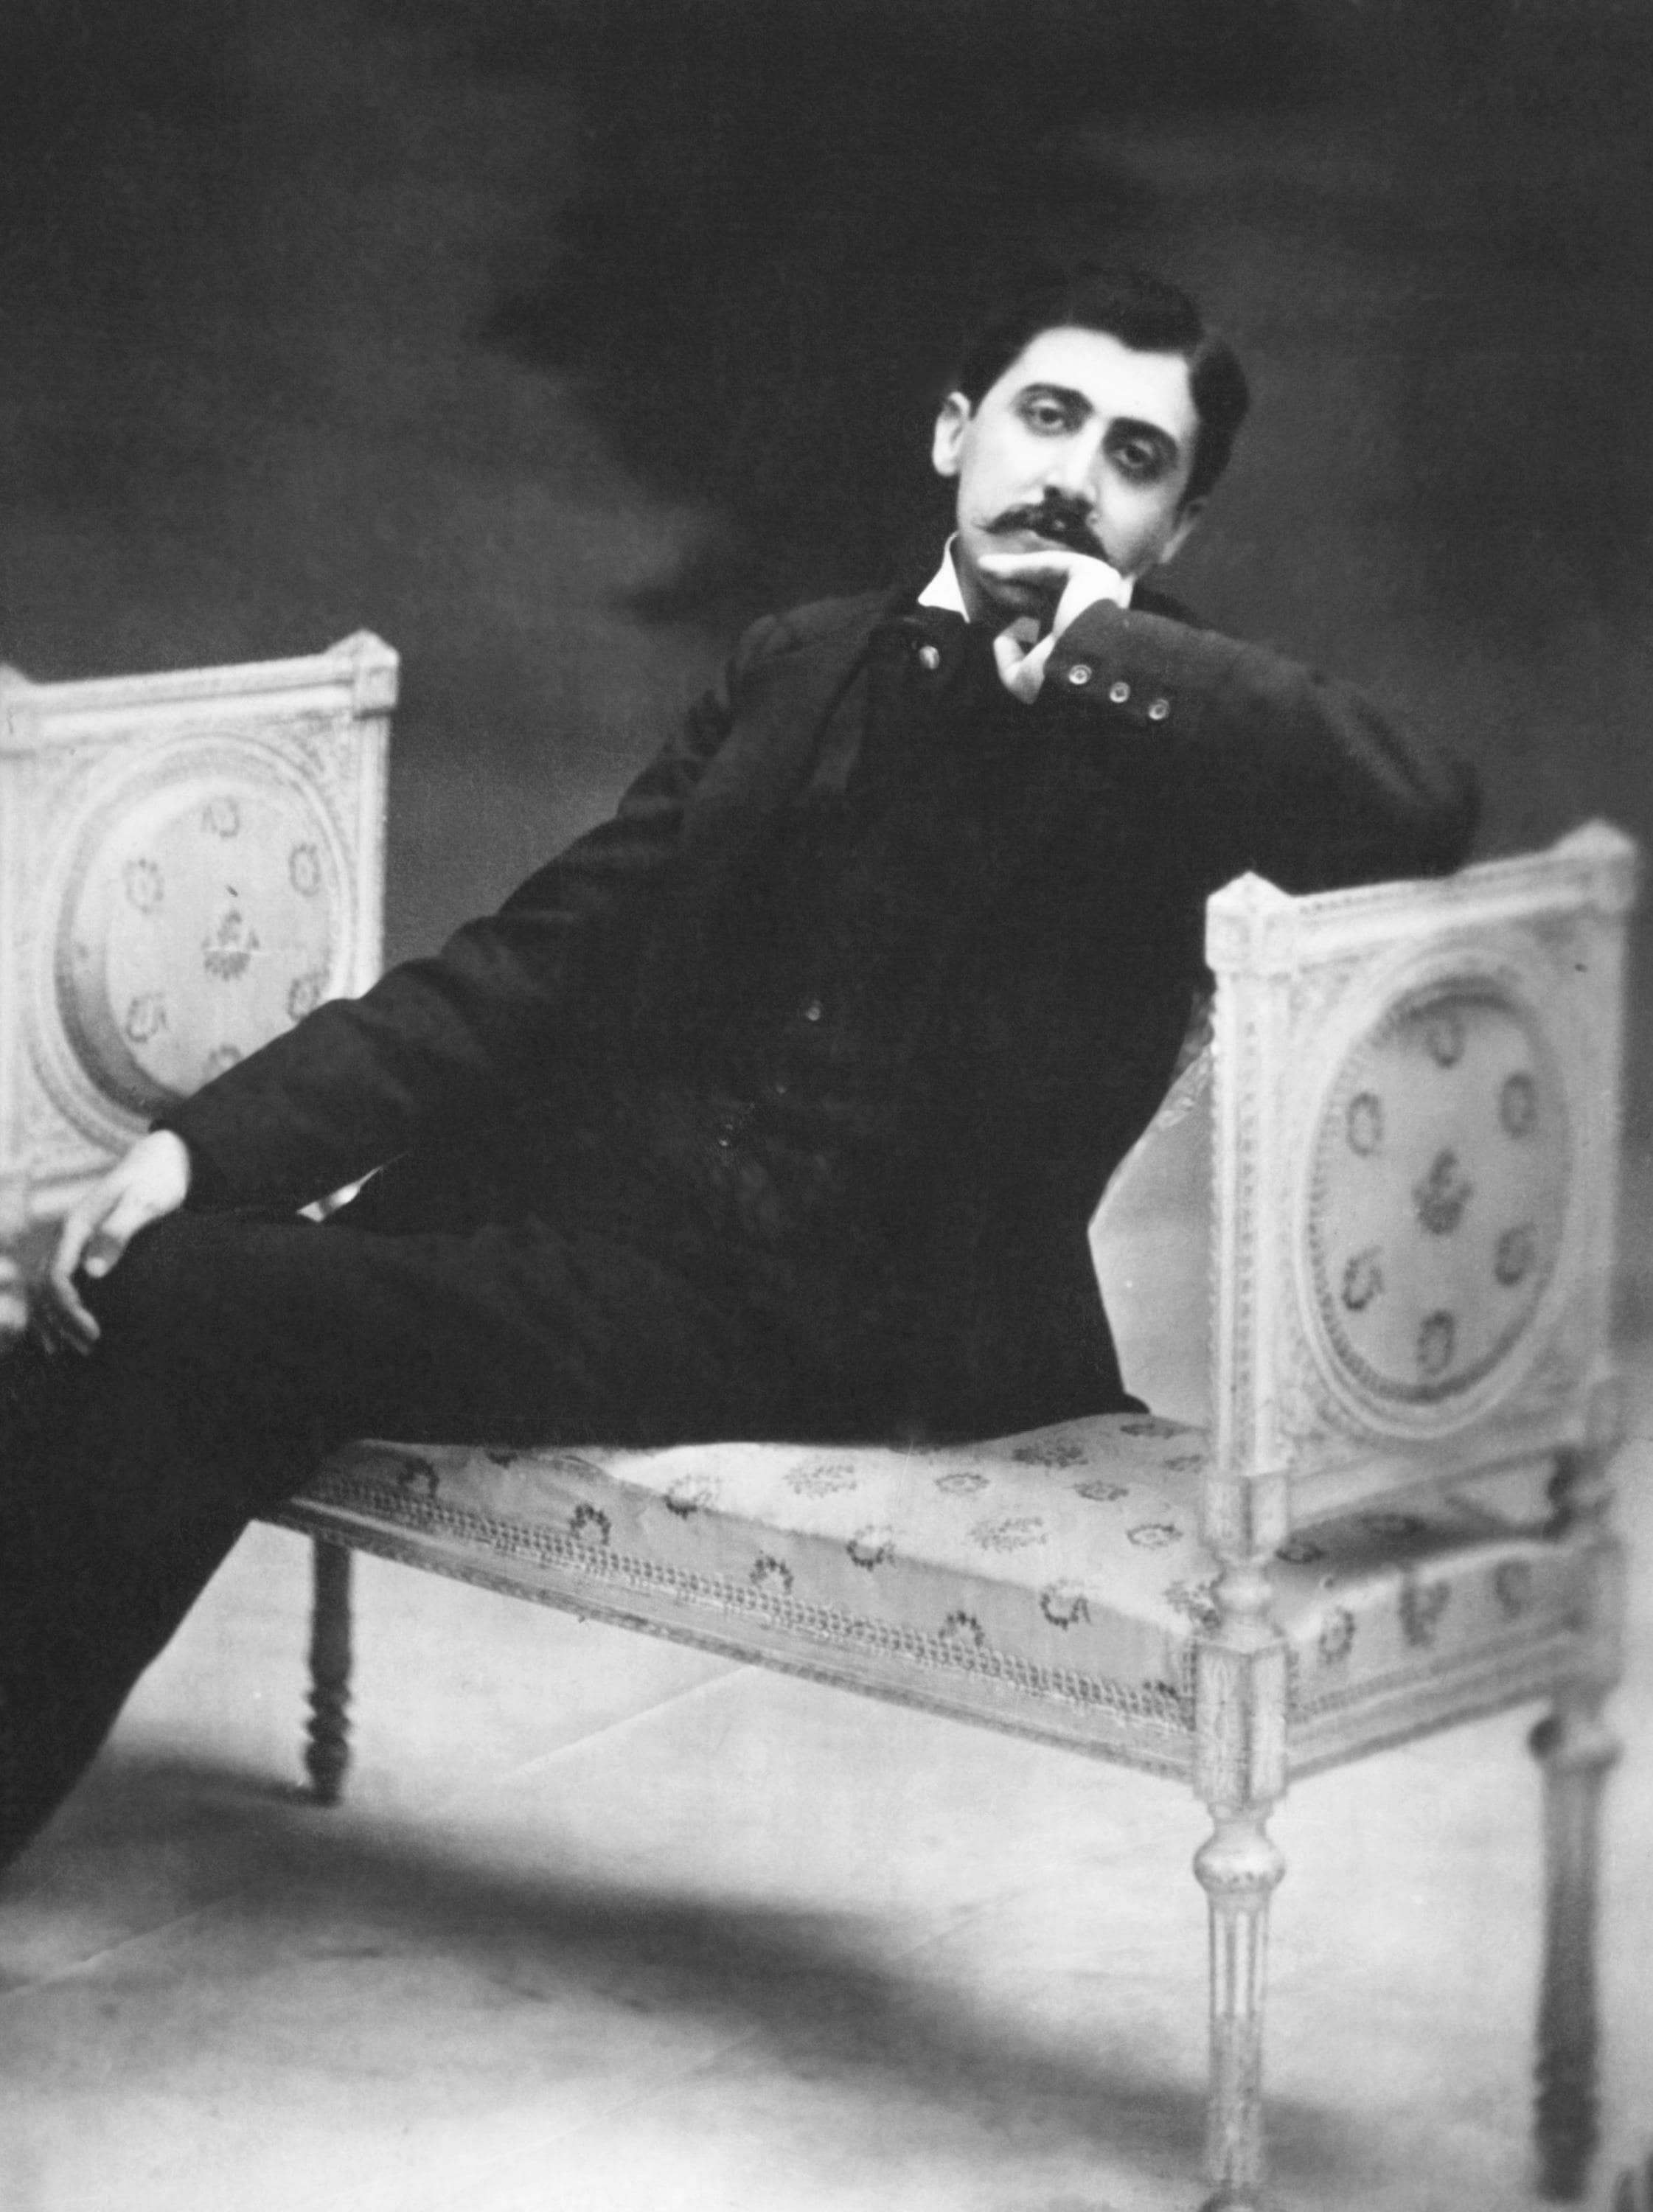 Marcel Proust per poter scrivere in assoluto silenzio fece foderare la stanza in cui scriveva di sughero.